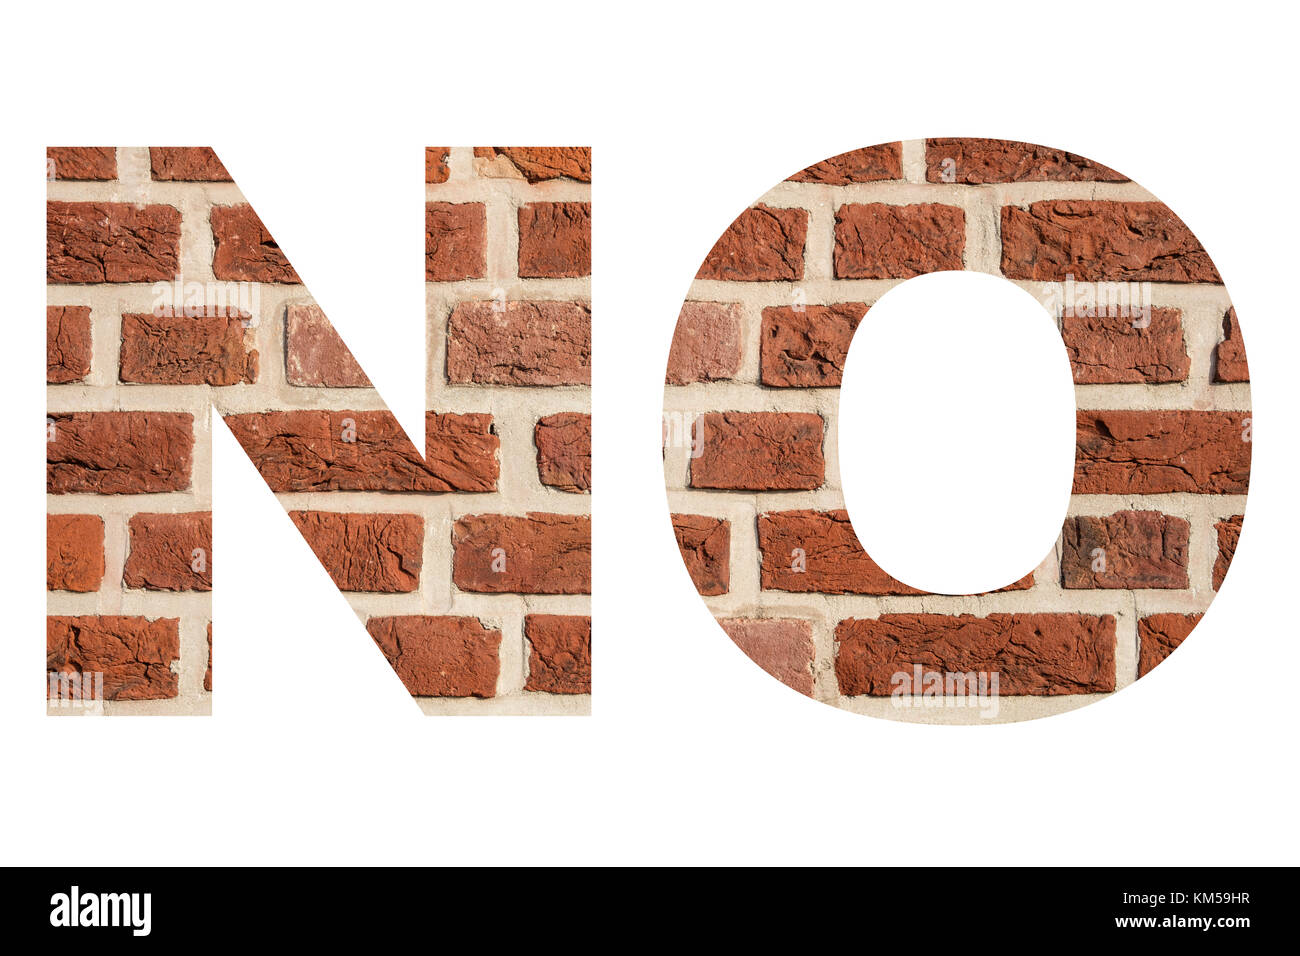 Wort "Nein" mit Textur von Red brick wall. Stockfoto